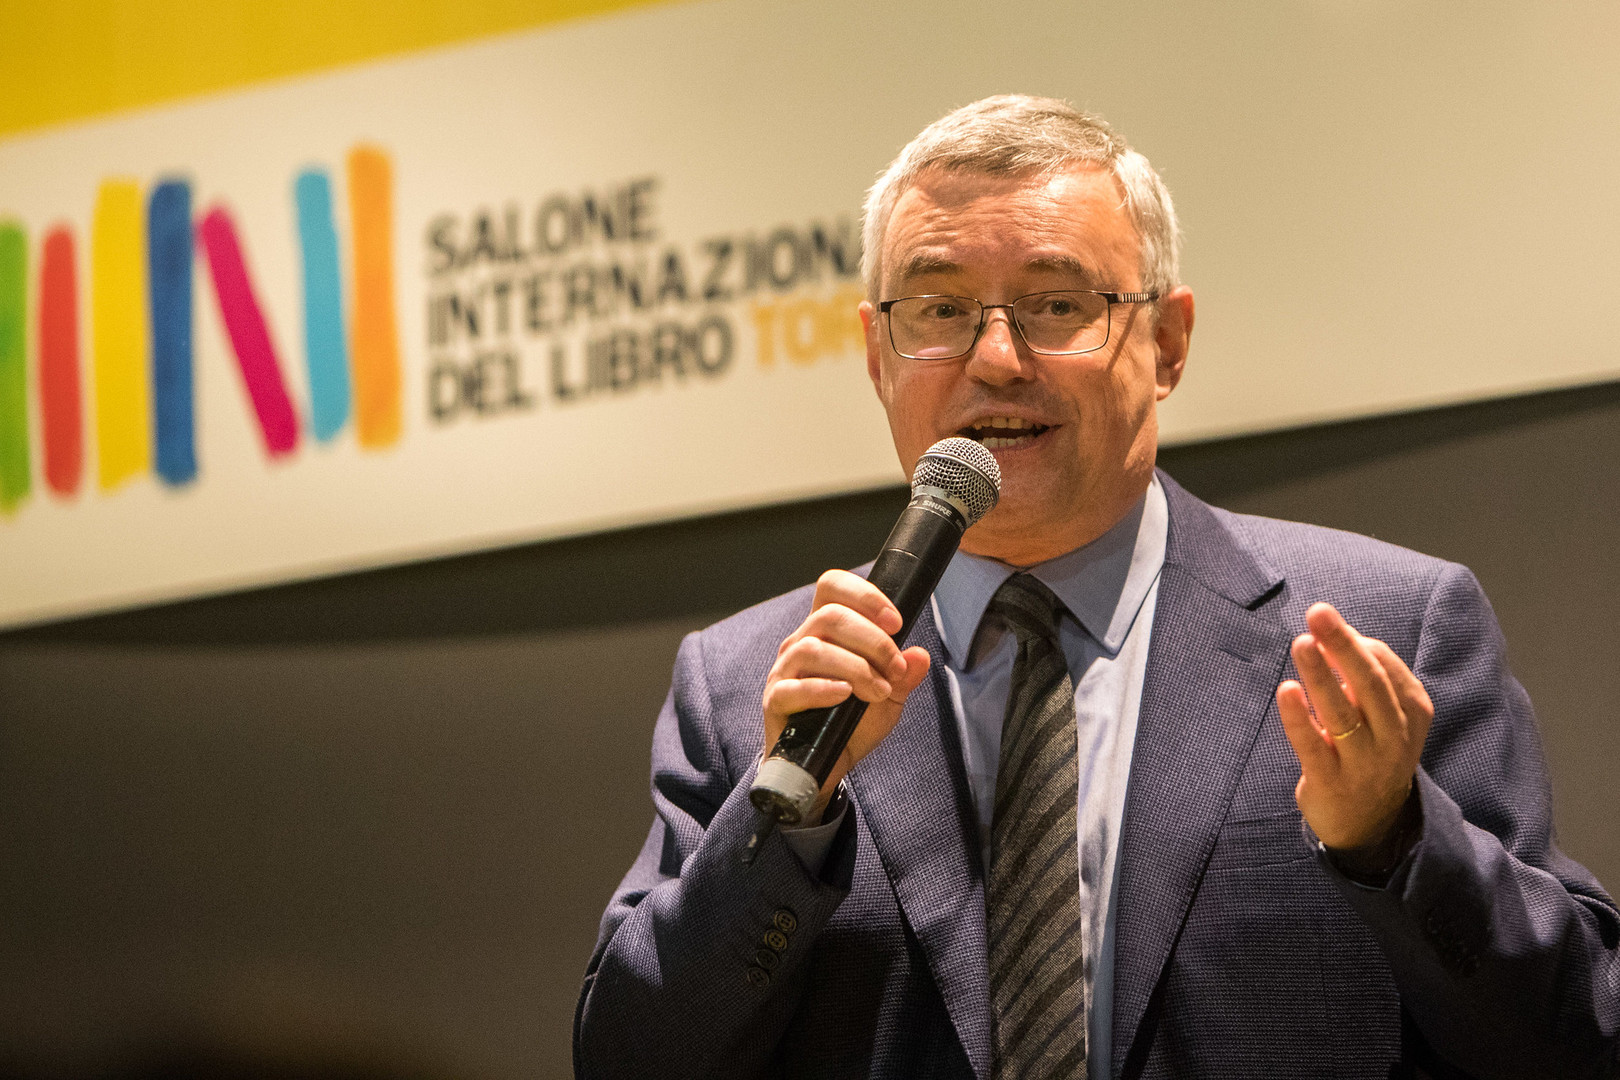 Salone Internazionale del Libro di Torino 2020